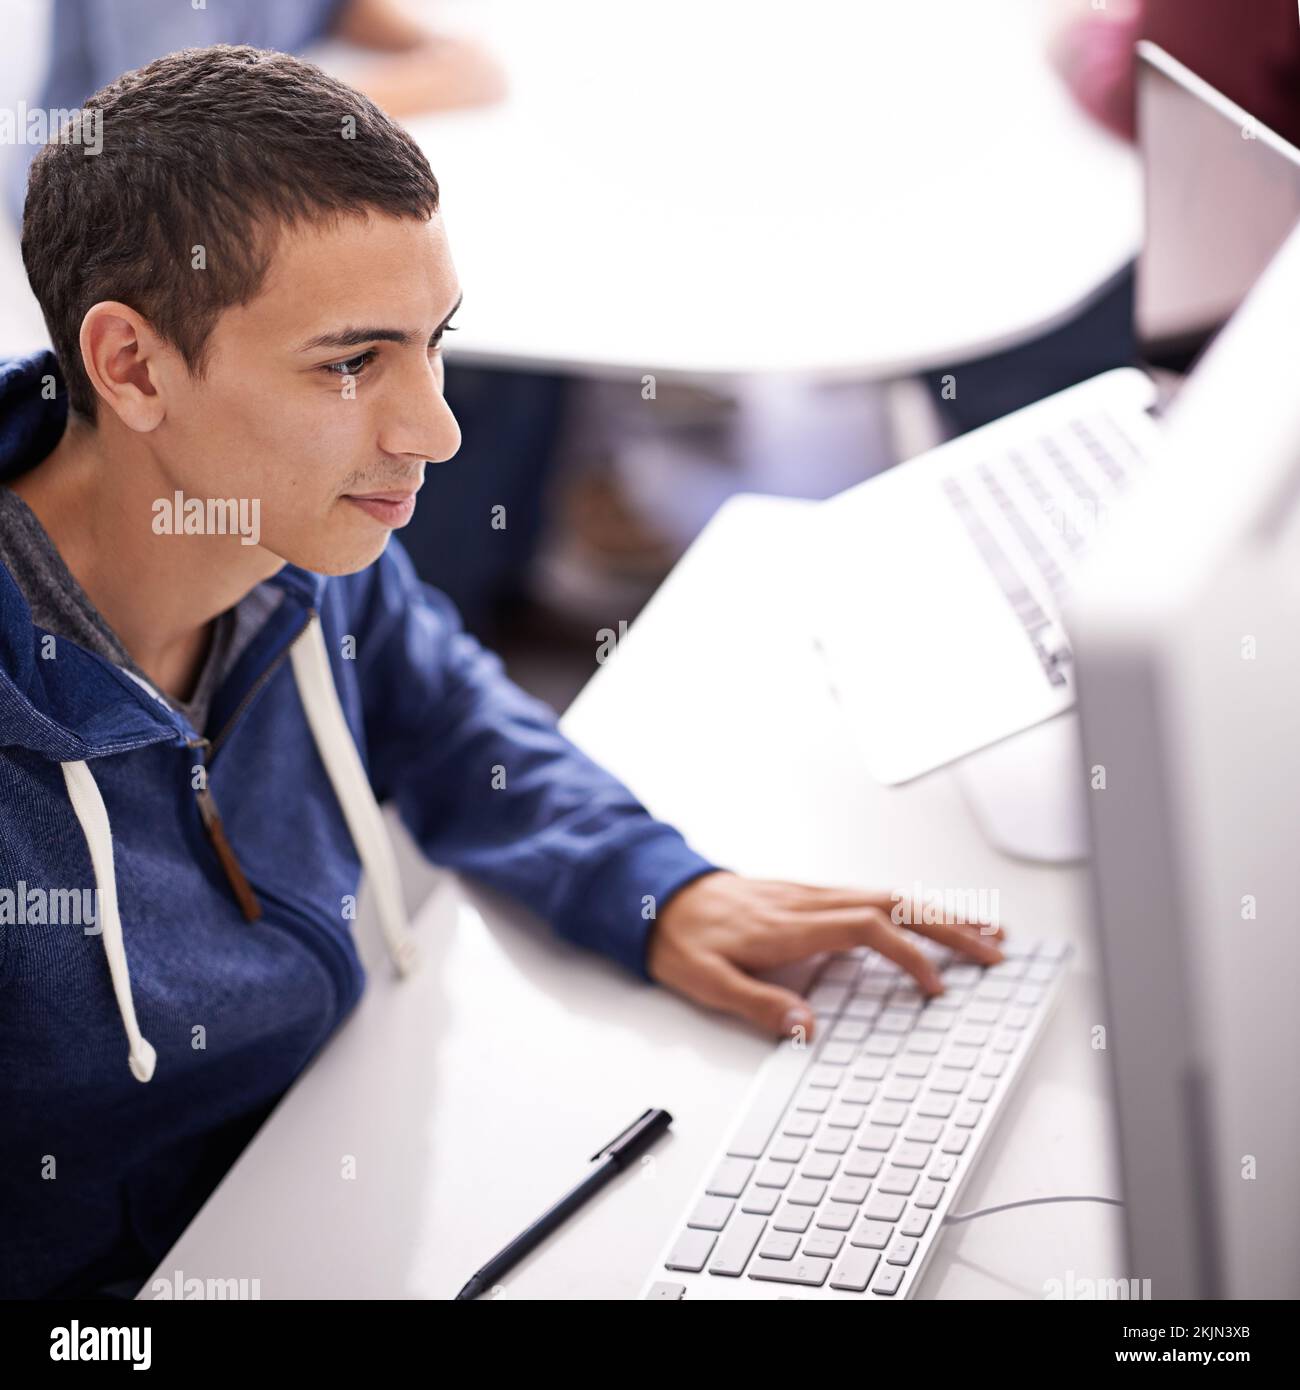 Dedicado a la fecha límite. un joven que trabaja en su ordenador en una oficina. Foto de stock